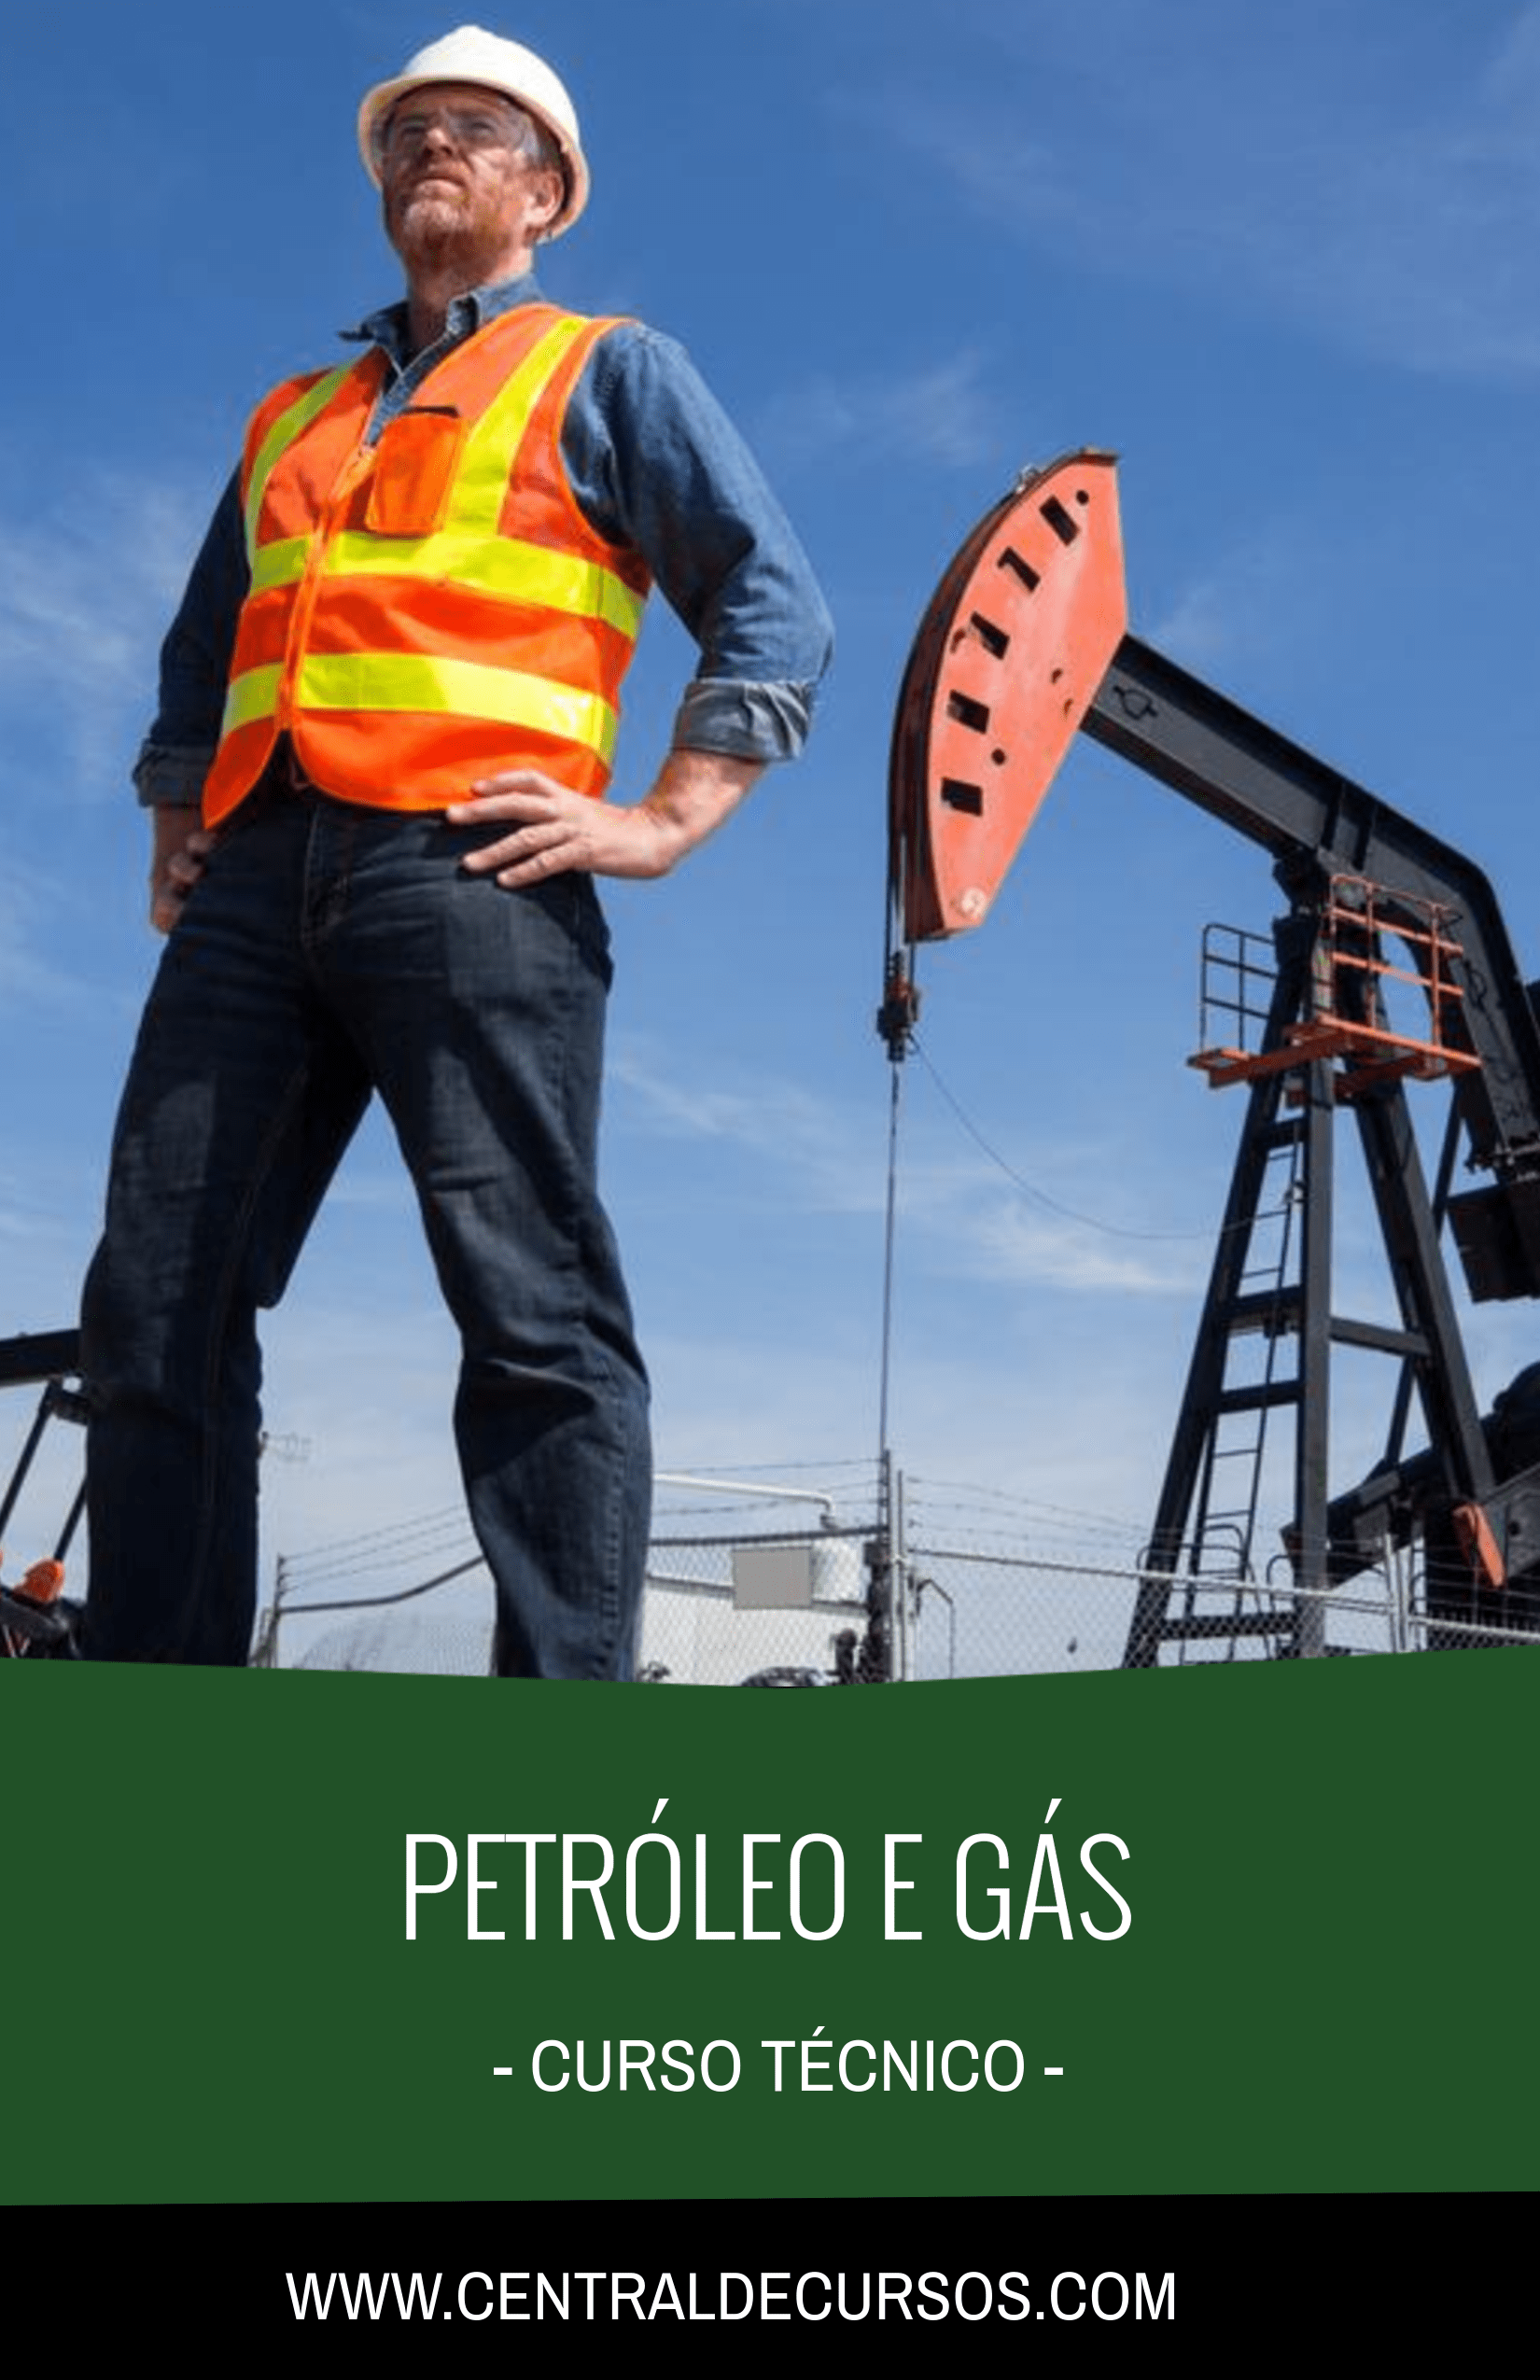 Curso técnico de Petróleo e Gás